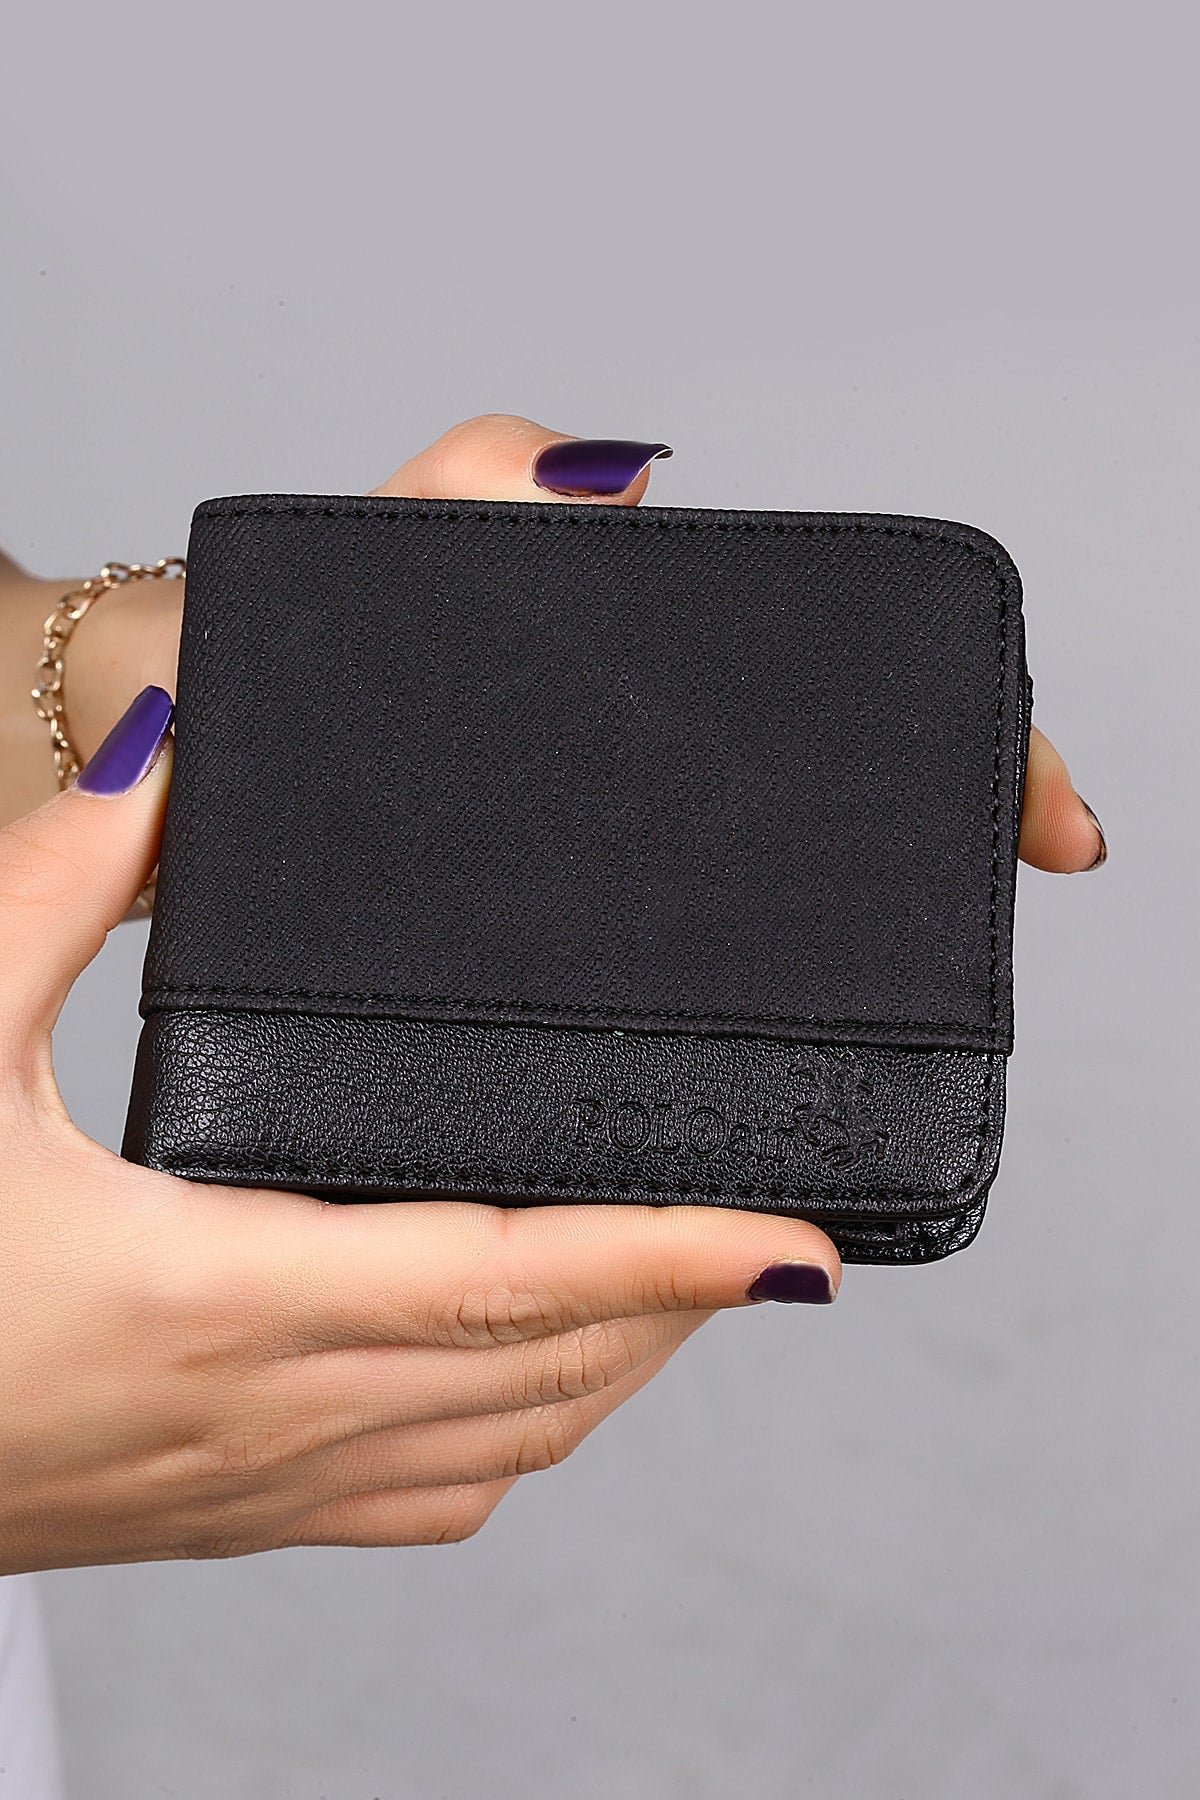 Belt Wallet Card Holder Keychain Lighter Black Set in Gift Box